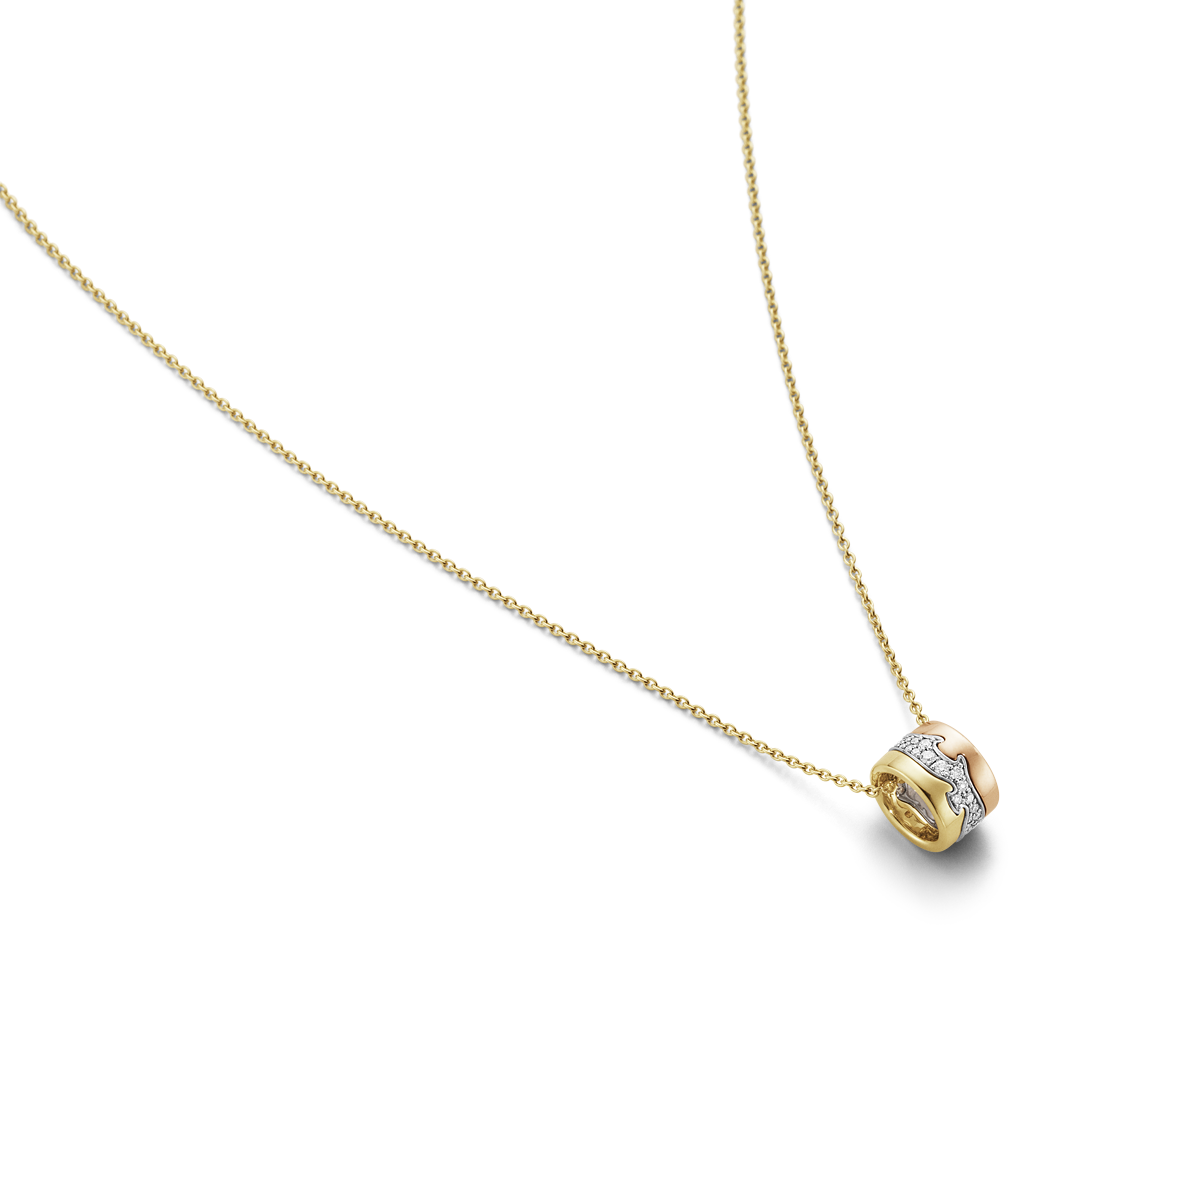 Fusion halskæde vedhæng med diamanter - rosaguld, hvidguld og guld fra Georg Jensen